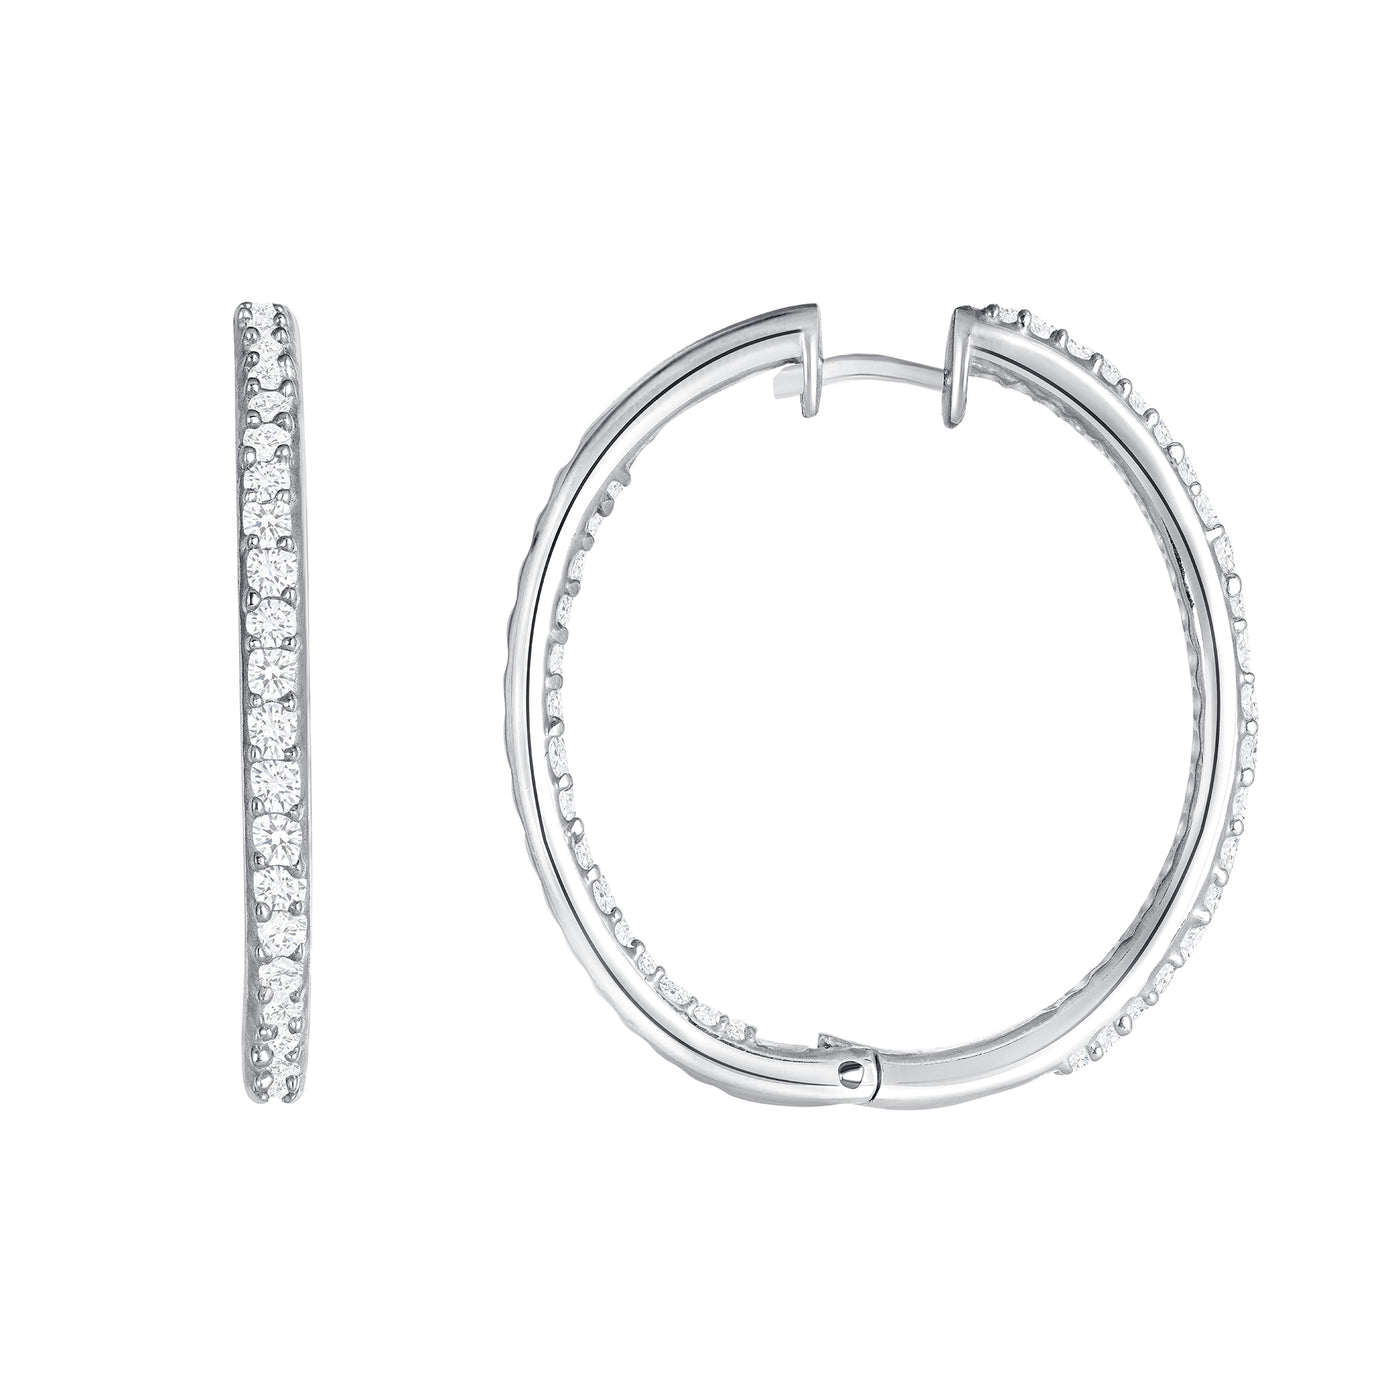 1.10 Carat Round Cut Diamond Hoop Earrings